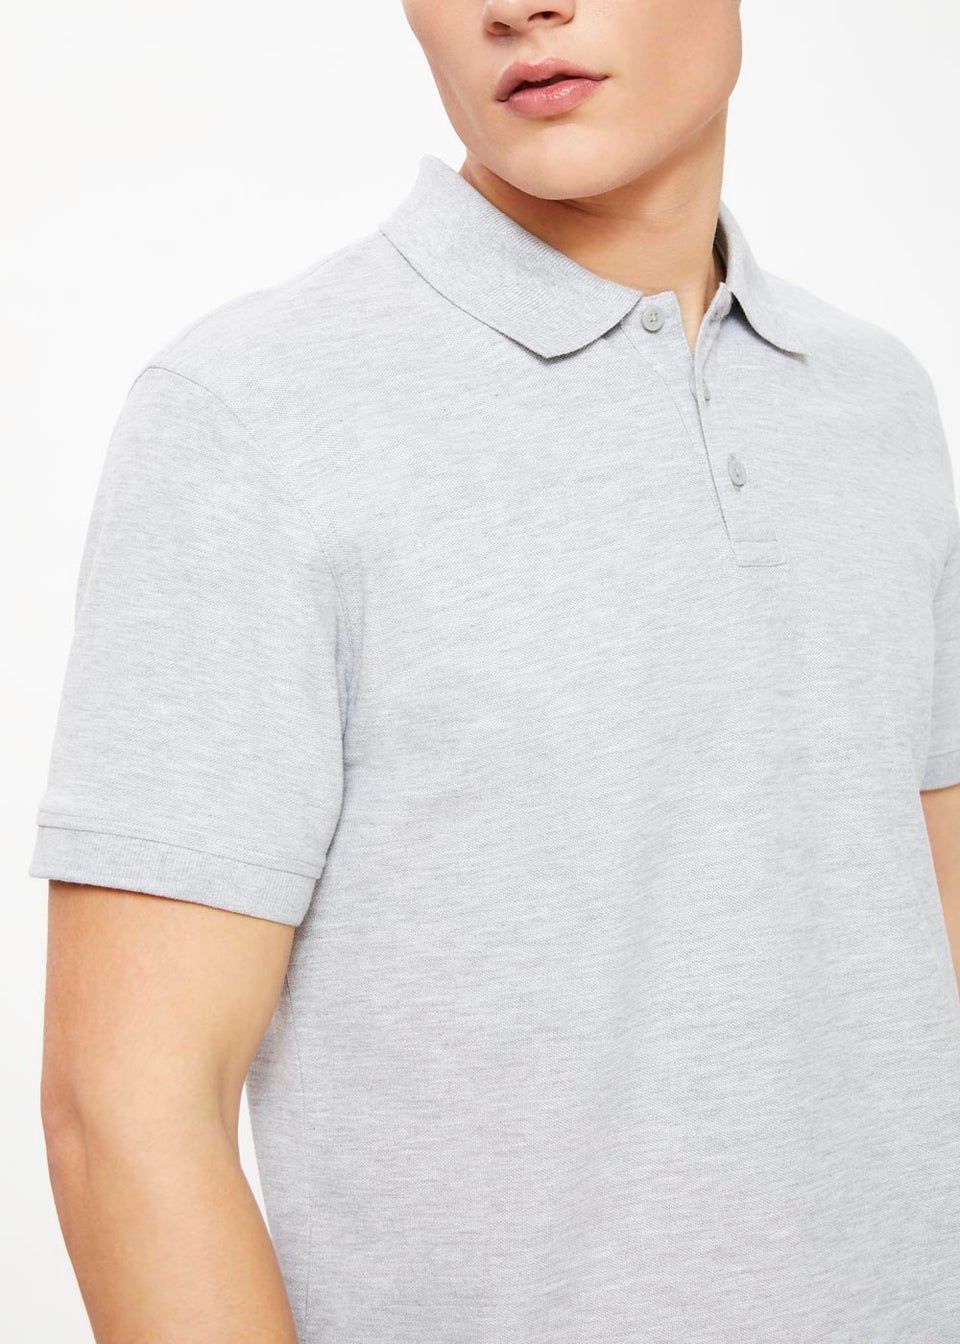 Grey Essential Pique Polo Shirt